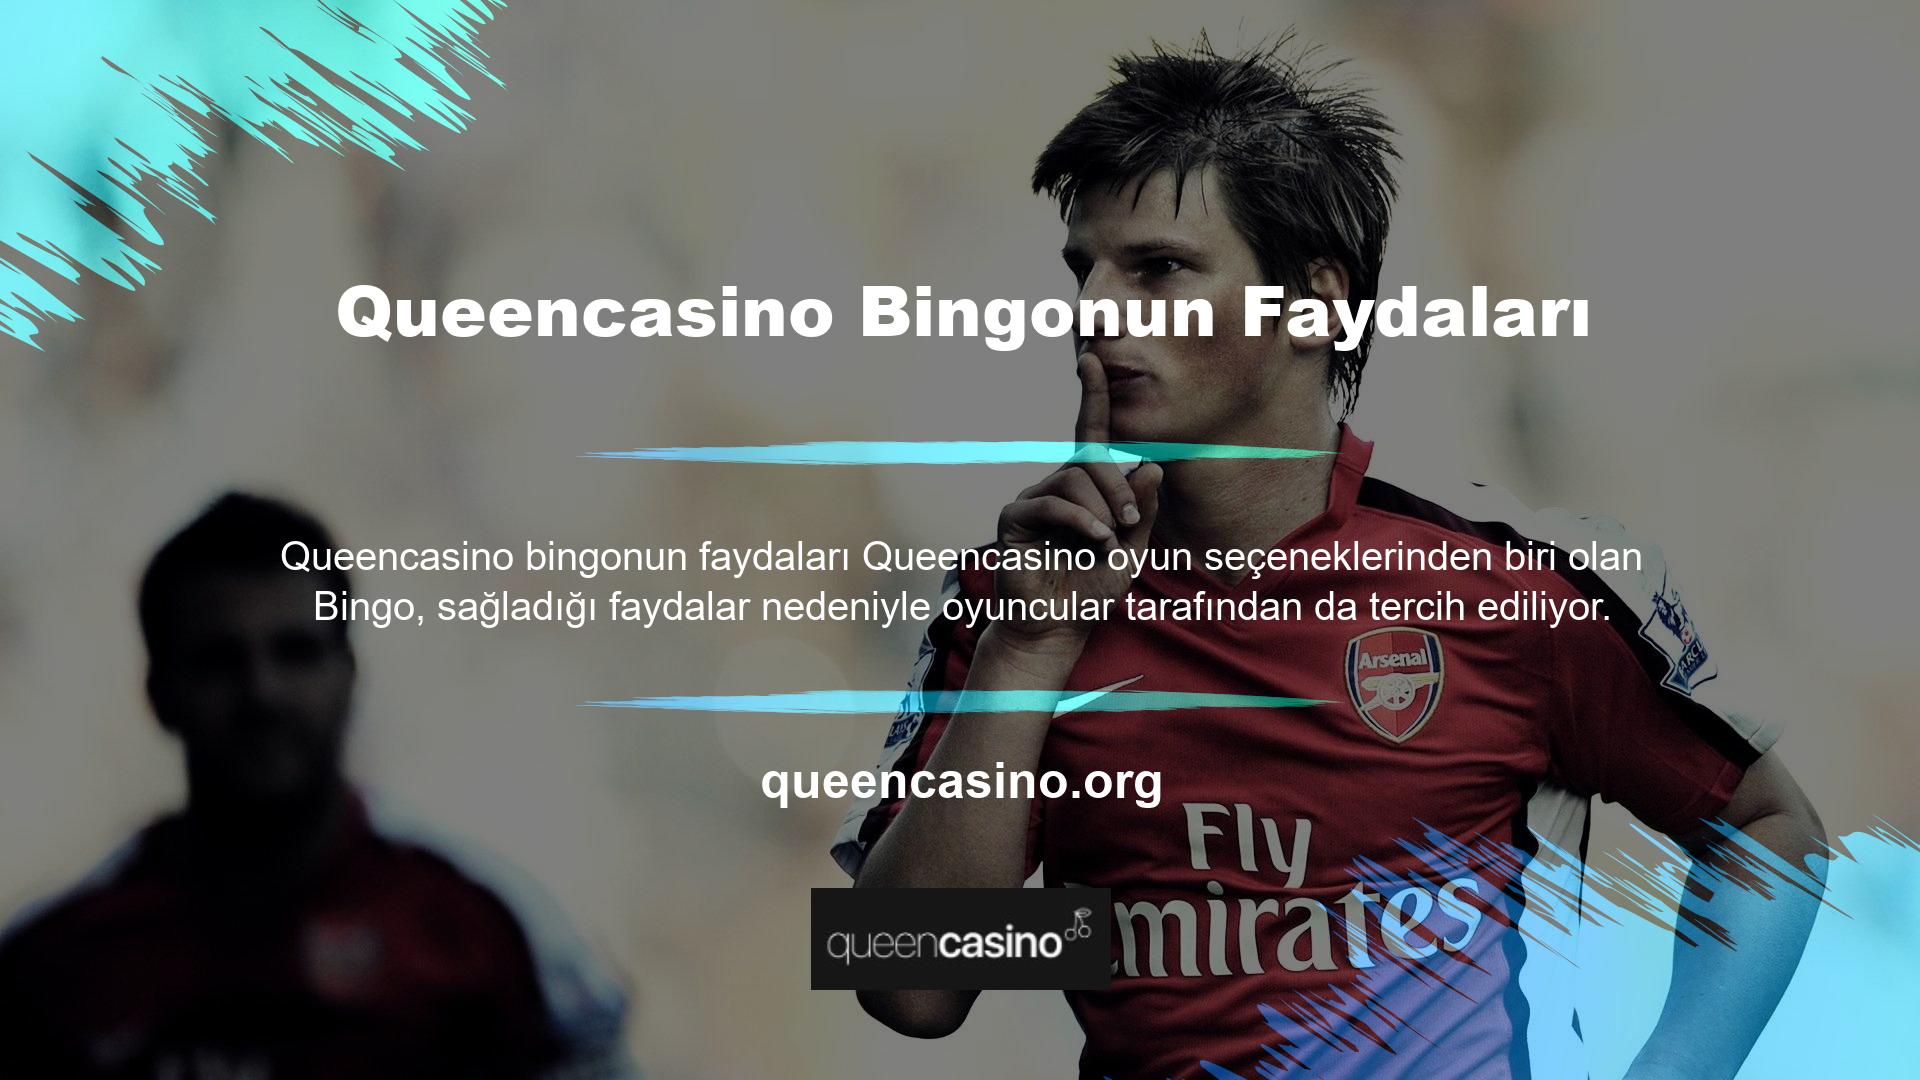 Queencasino web sitesi, üyelerine tüm oyunlarda ve bahis seçeneklerinde yüksek oranlardan yararlanma fırsatı sunmaktadır